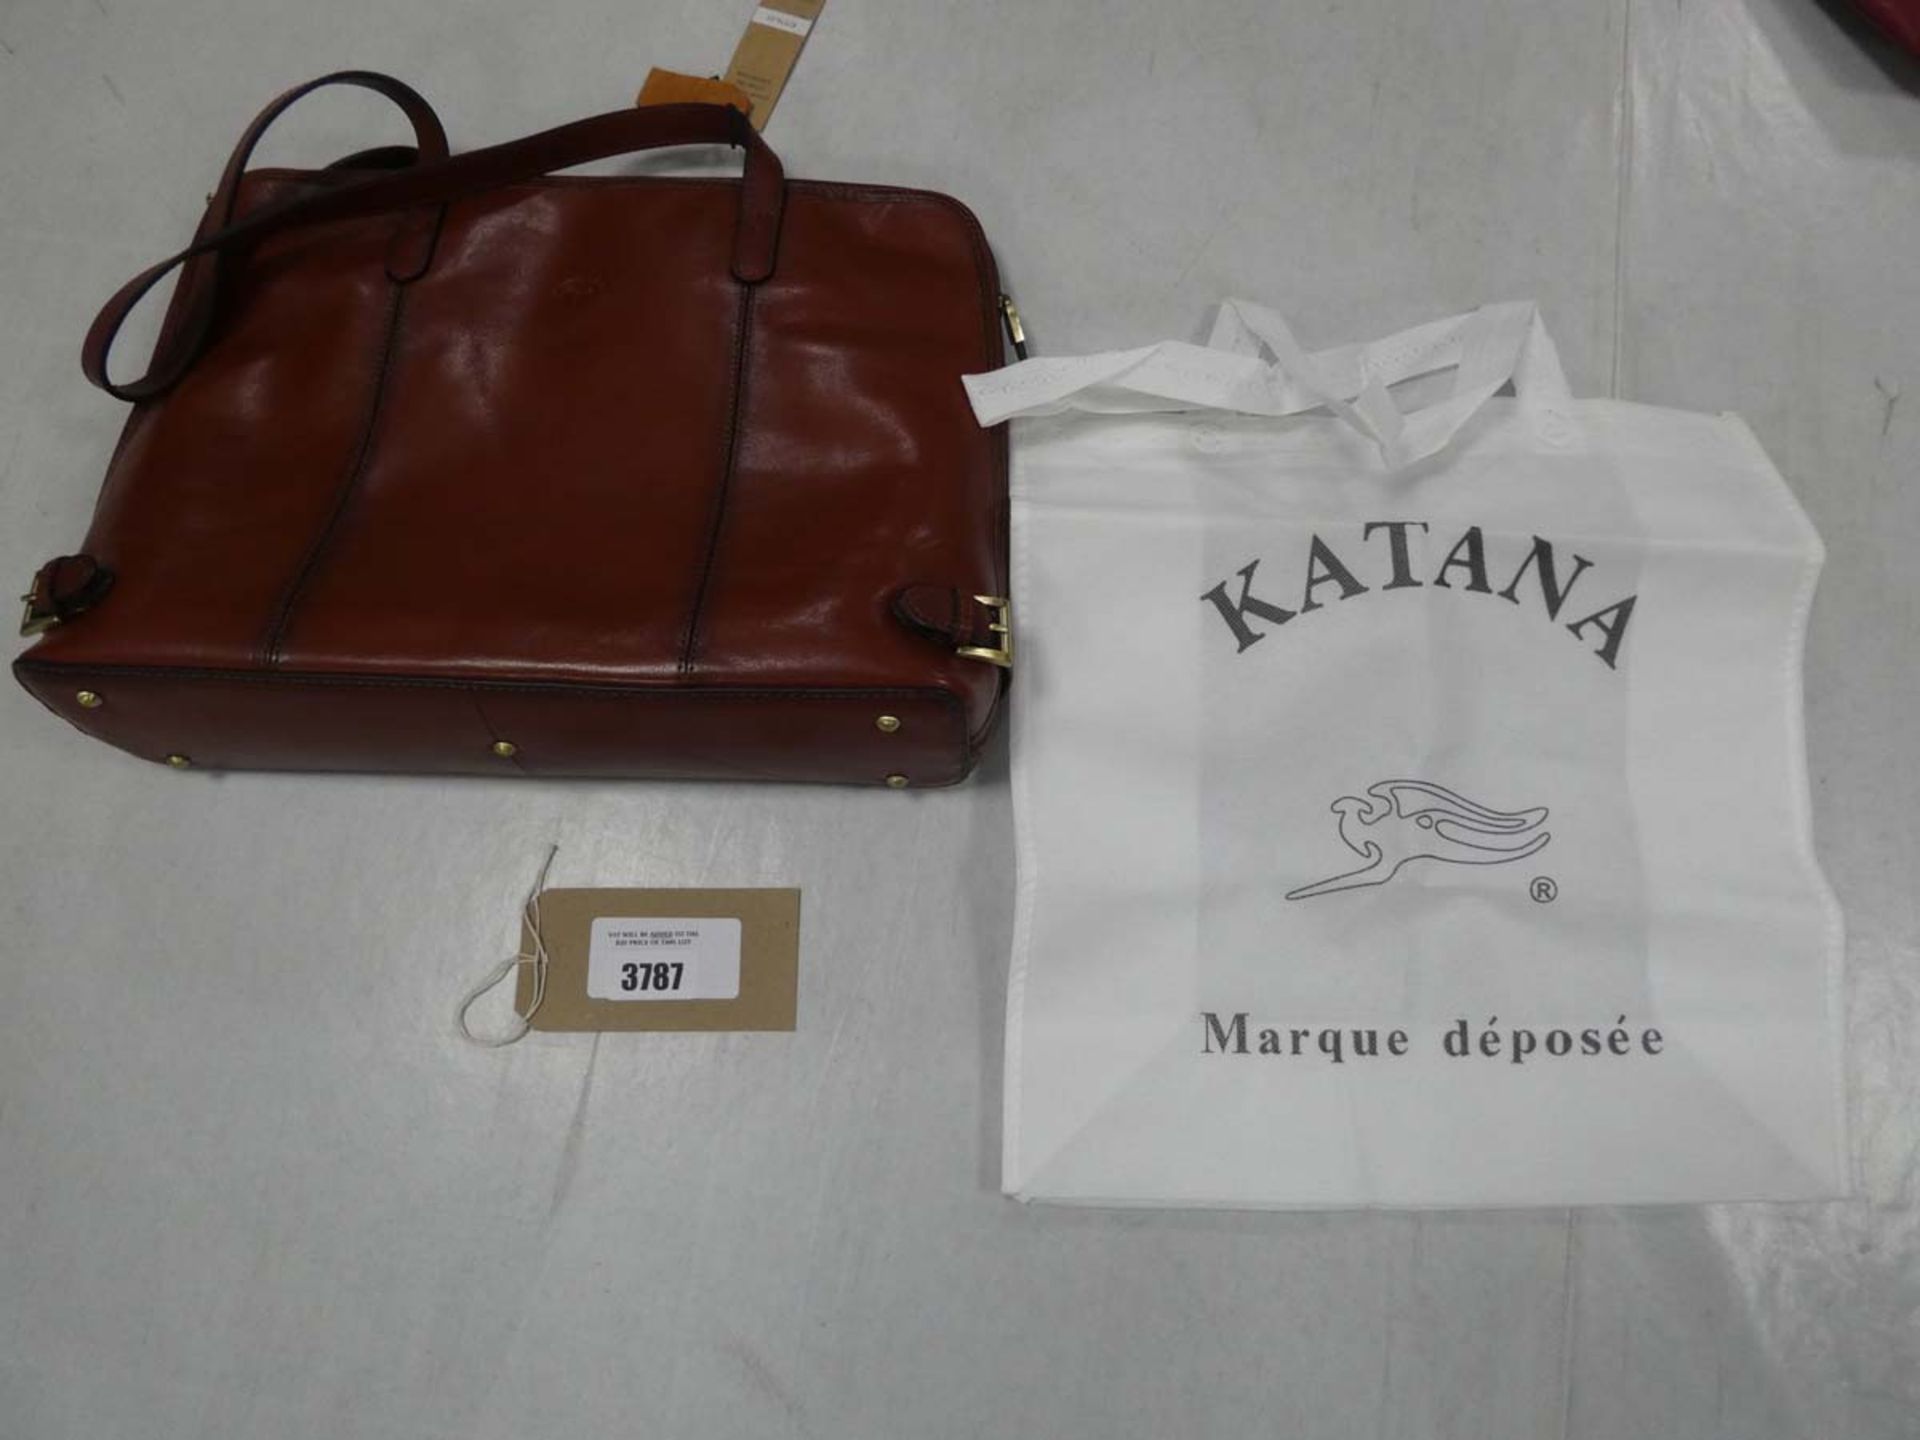 Katana brown leather handbag, with dustbag (inside bag)